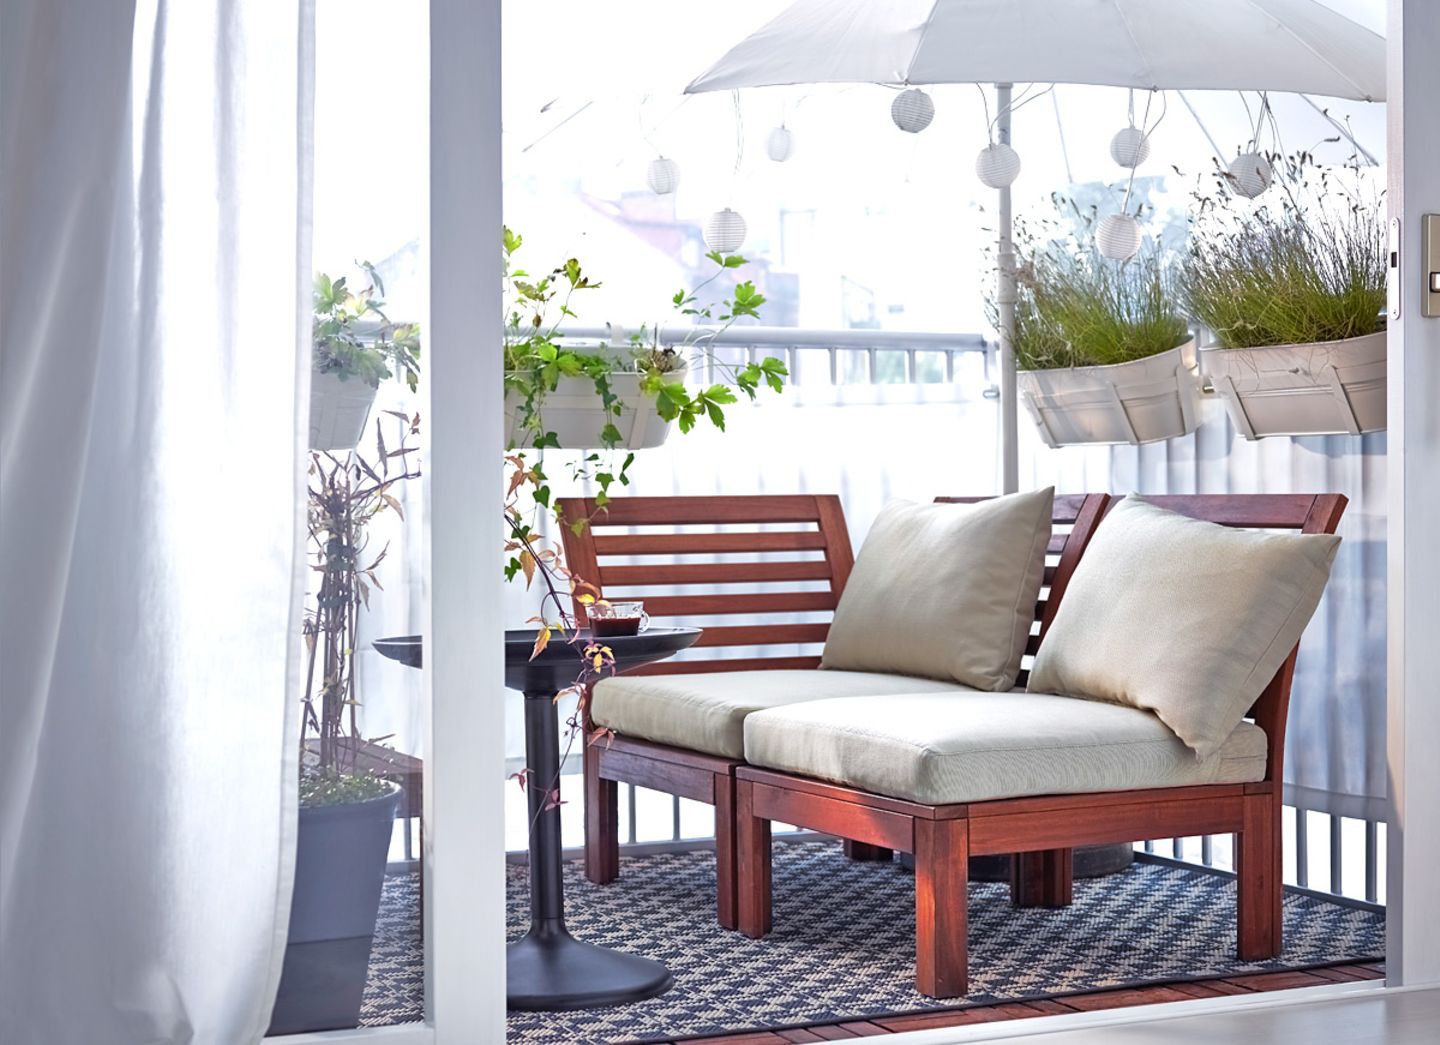 Outdoor-Sofa "Äpplarö" von Ikea